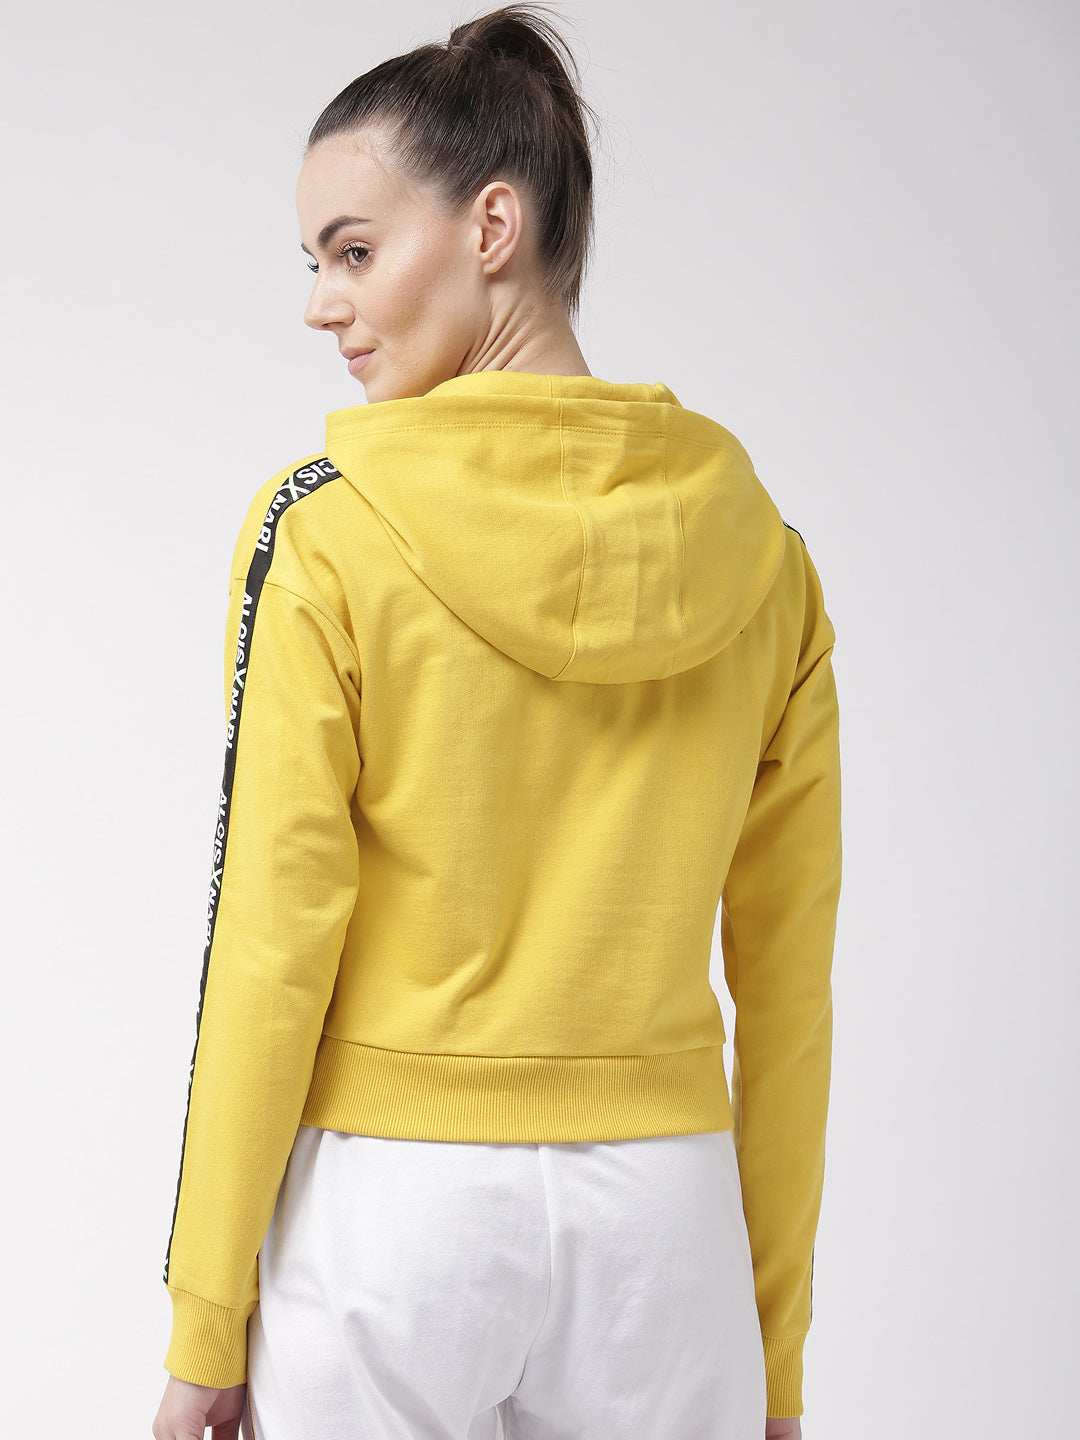 Alcis Women Yellow Solid Hooded Sweatshirt